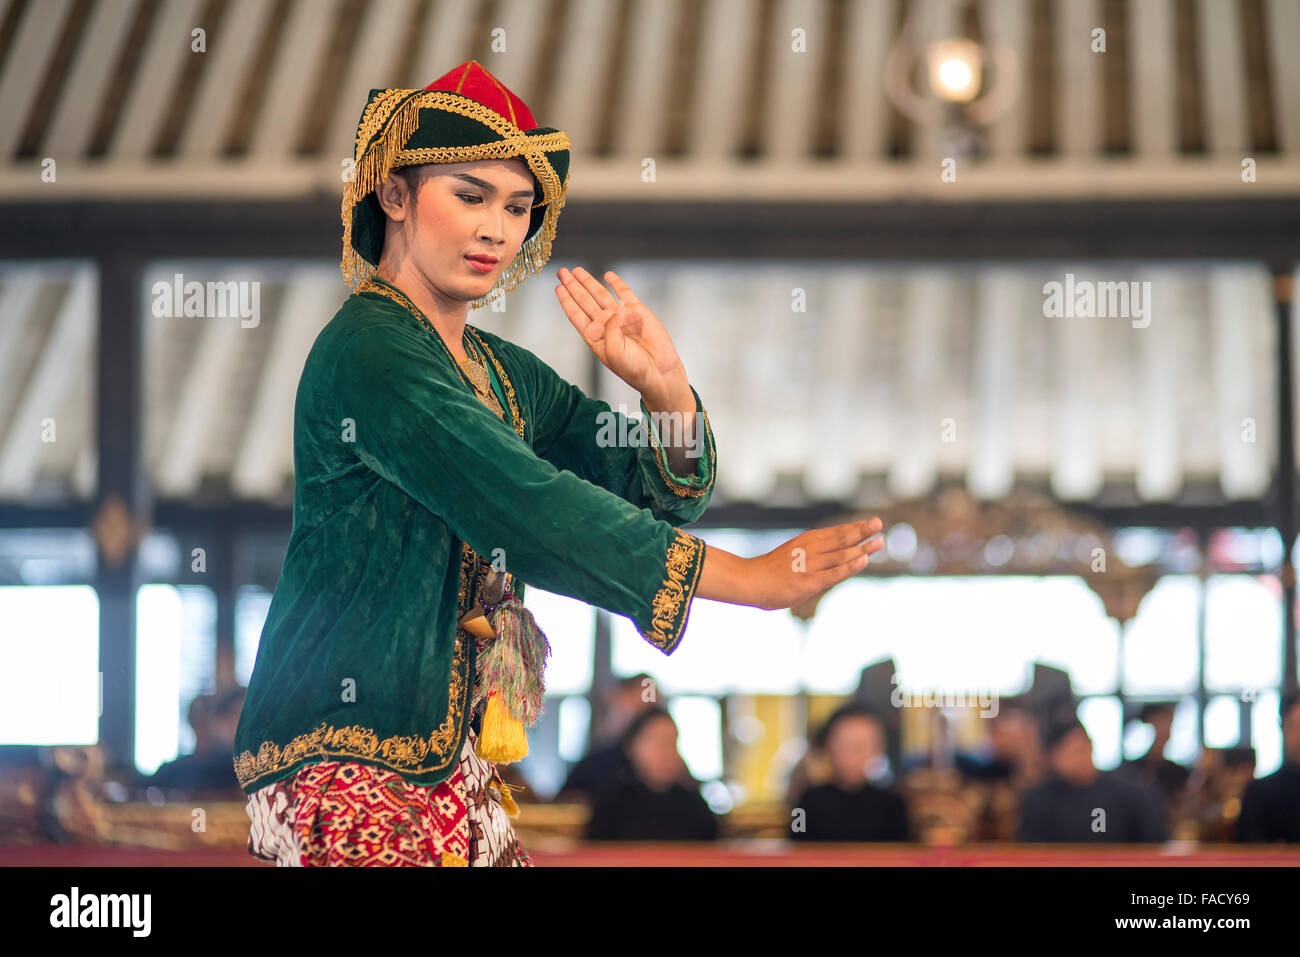 Realización de una bailarina de danza tradicional javanesa en el Palacio del Sultán o Kraton, Yogyakarta, Java, Indonesia, Asia Foto de stock